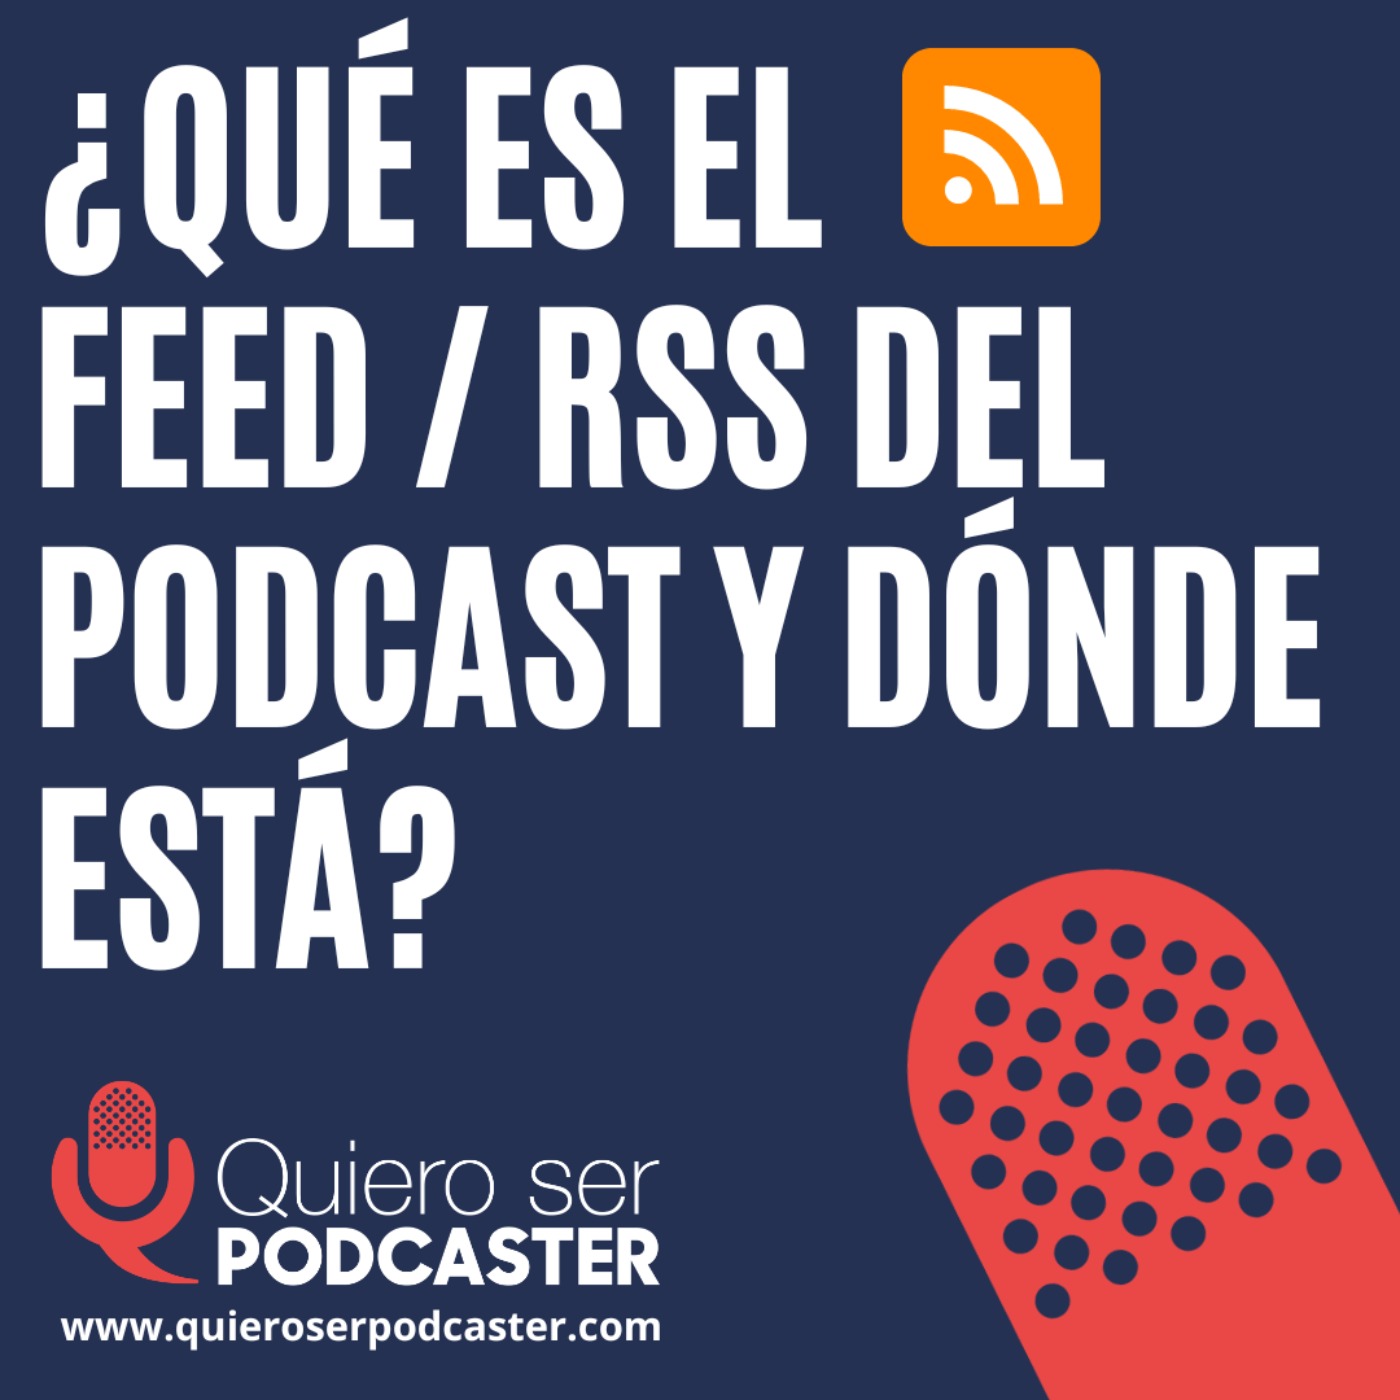 ¿Qué es el feed RSS del podcast y dónde está?